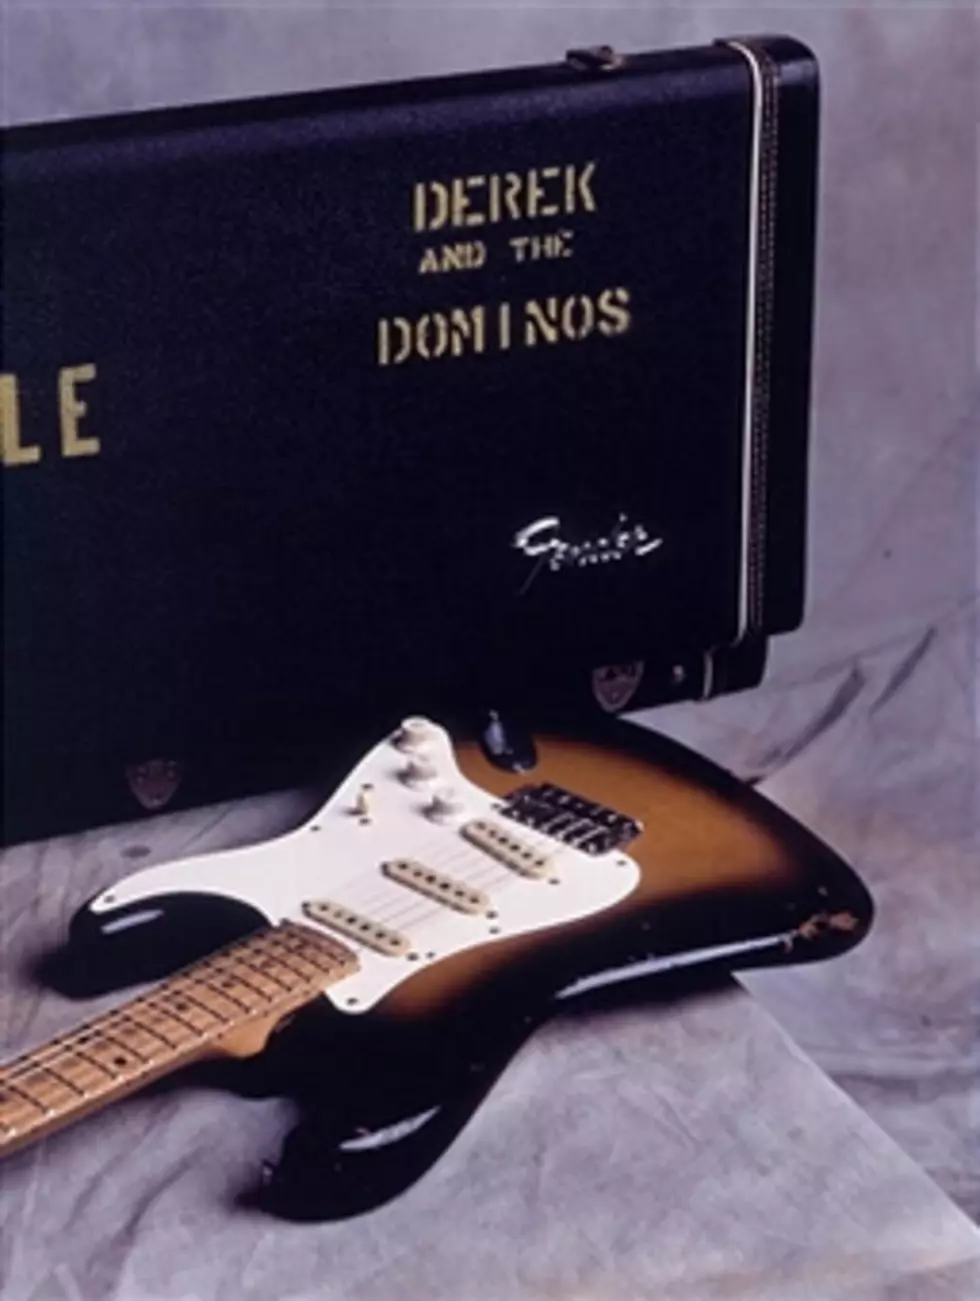 My Lost Treasure: Derek And The Dominos